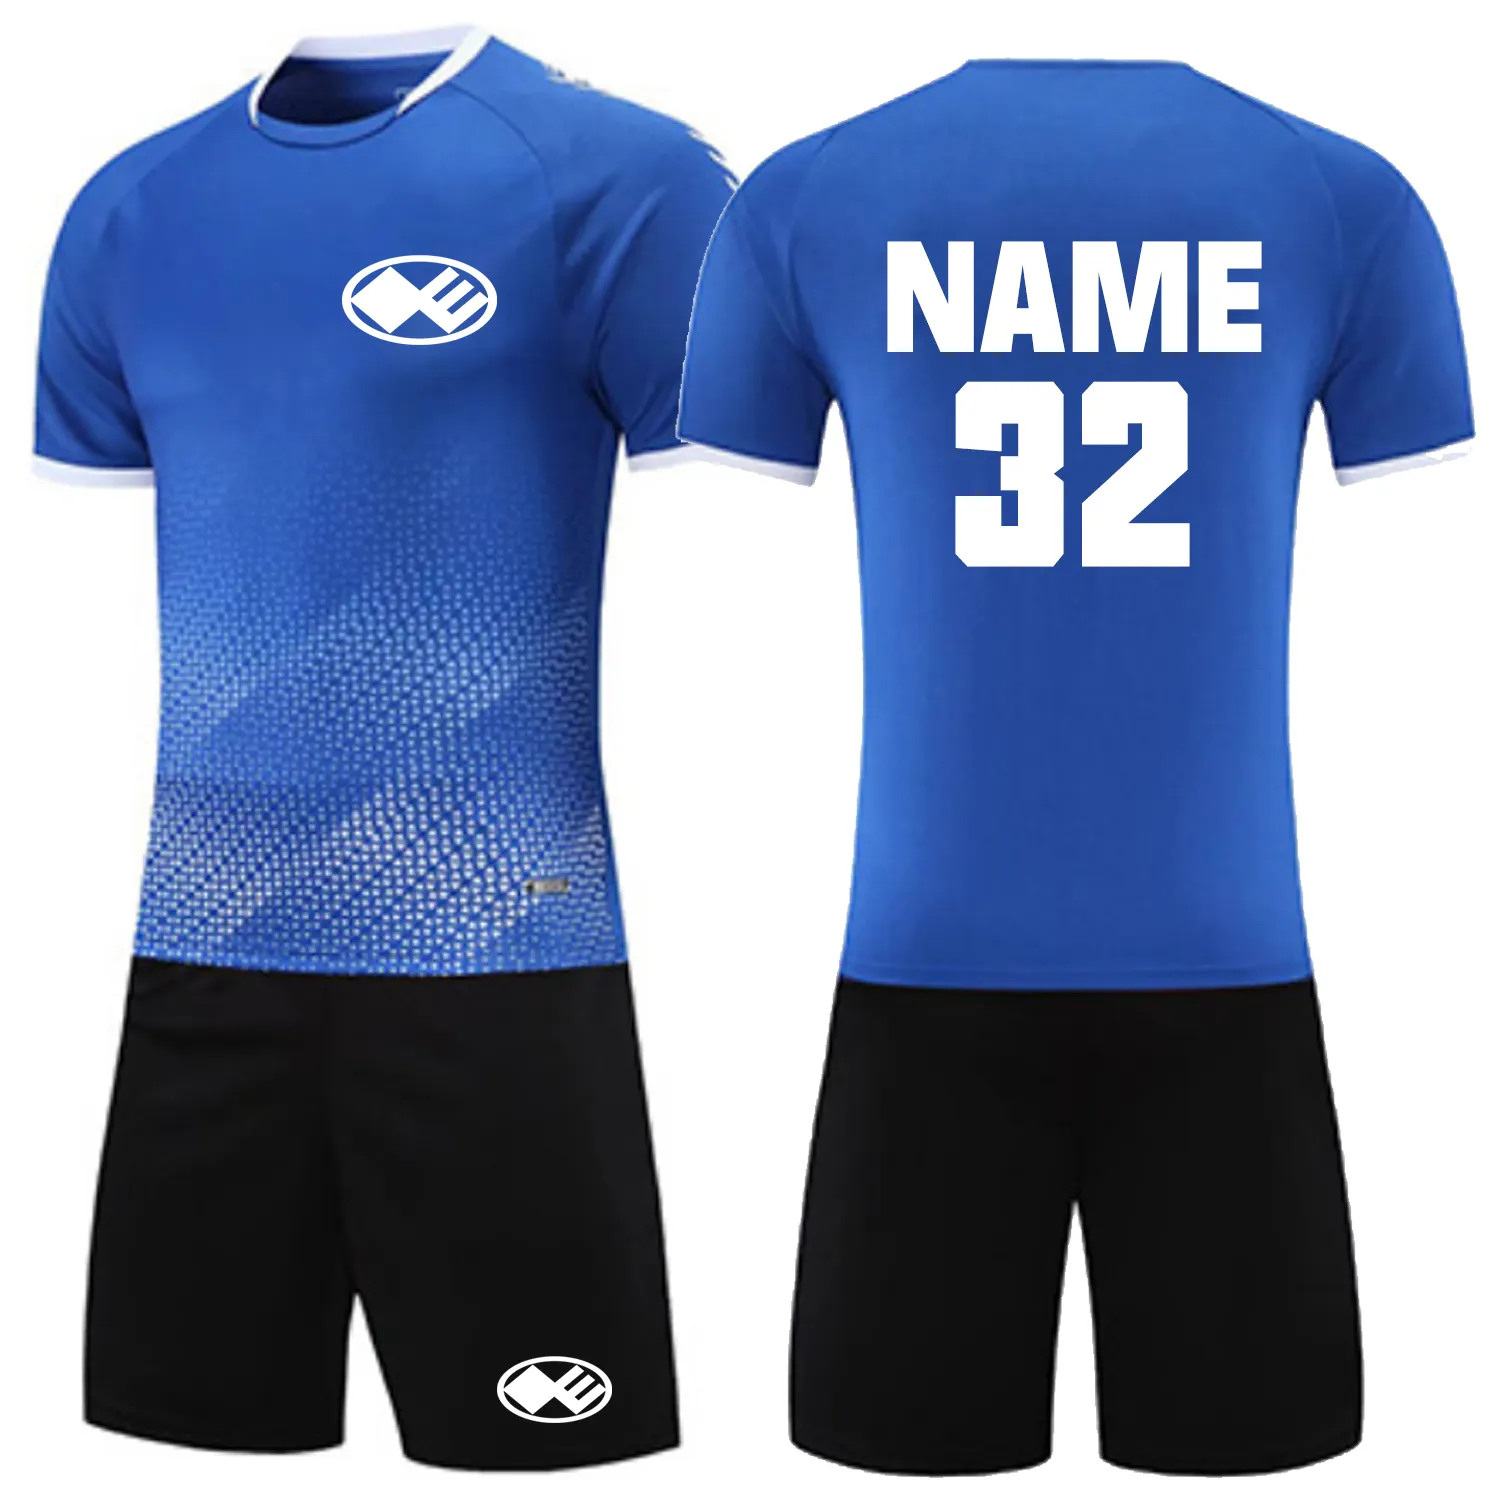 Logo personalizzato 2025 2024 uniforme da calcio in poliestere uniforme di alta qualità maglia da calcio ad asciugatura rapida comodo abbigliamento sportivo completo tuta